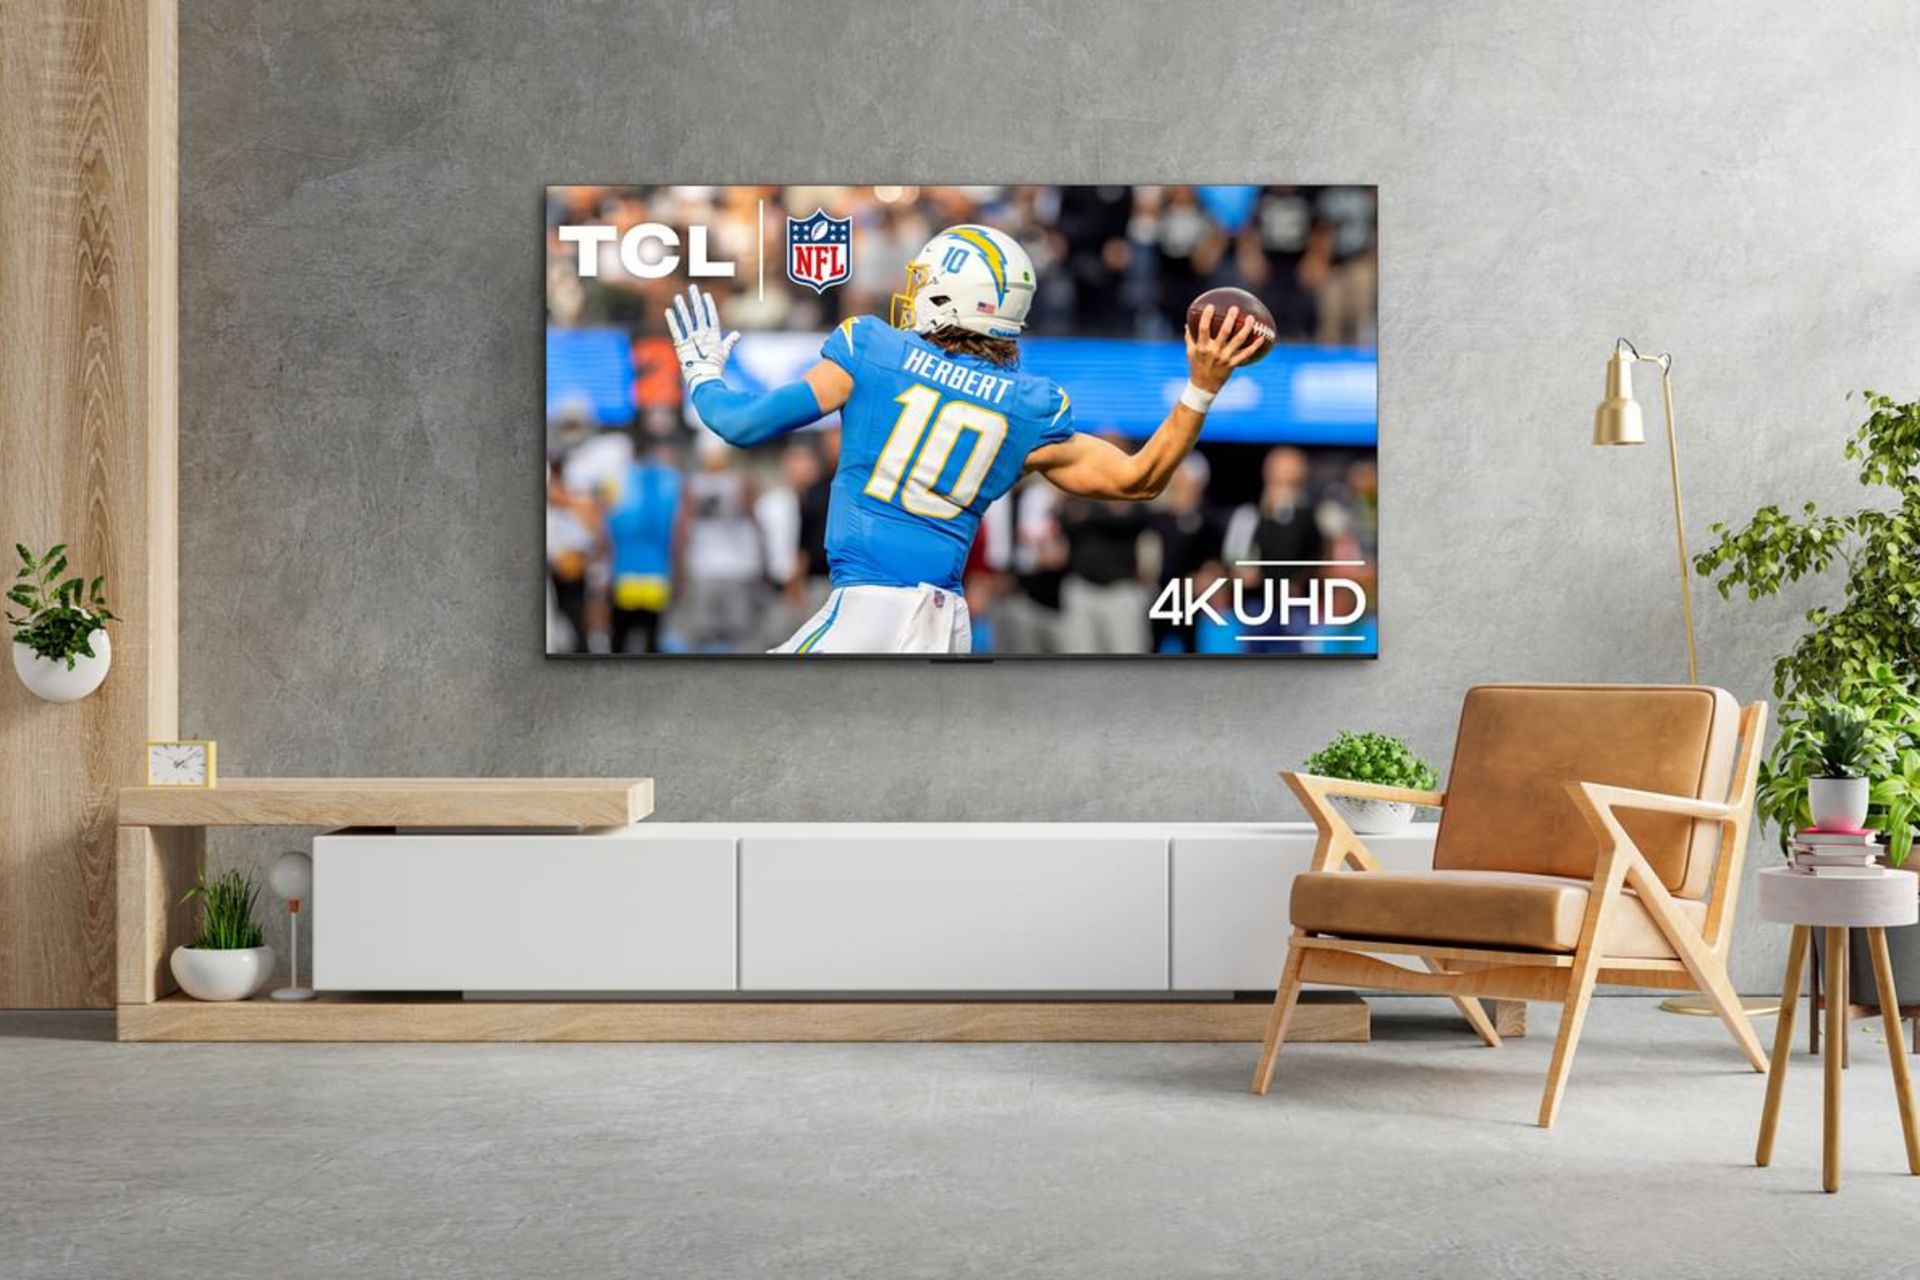 تلویزیون TCL S551G نصب شده روی دیوار یک اتاق مدرن در حال پخش فوتبال آمریکایی